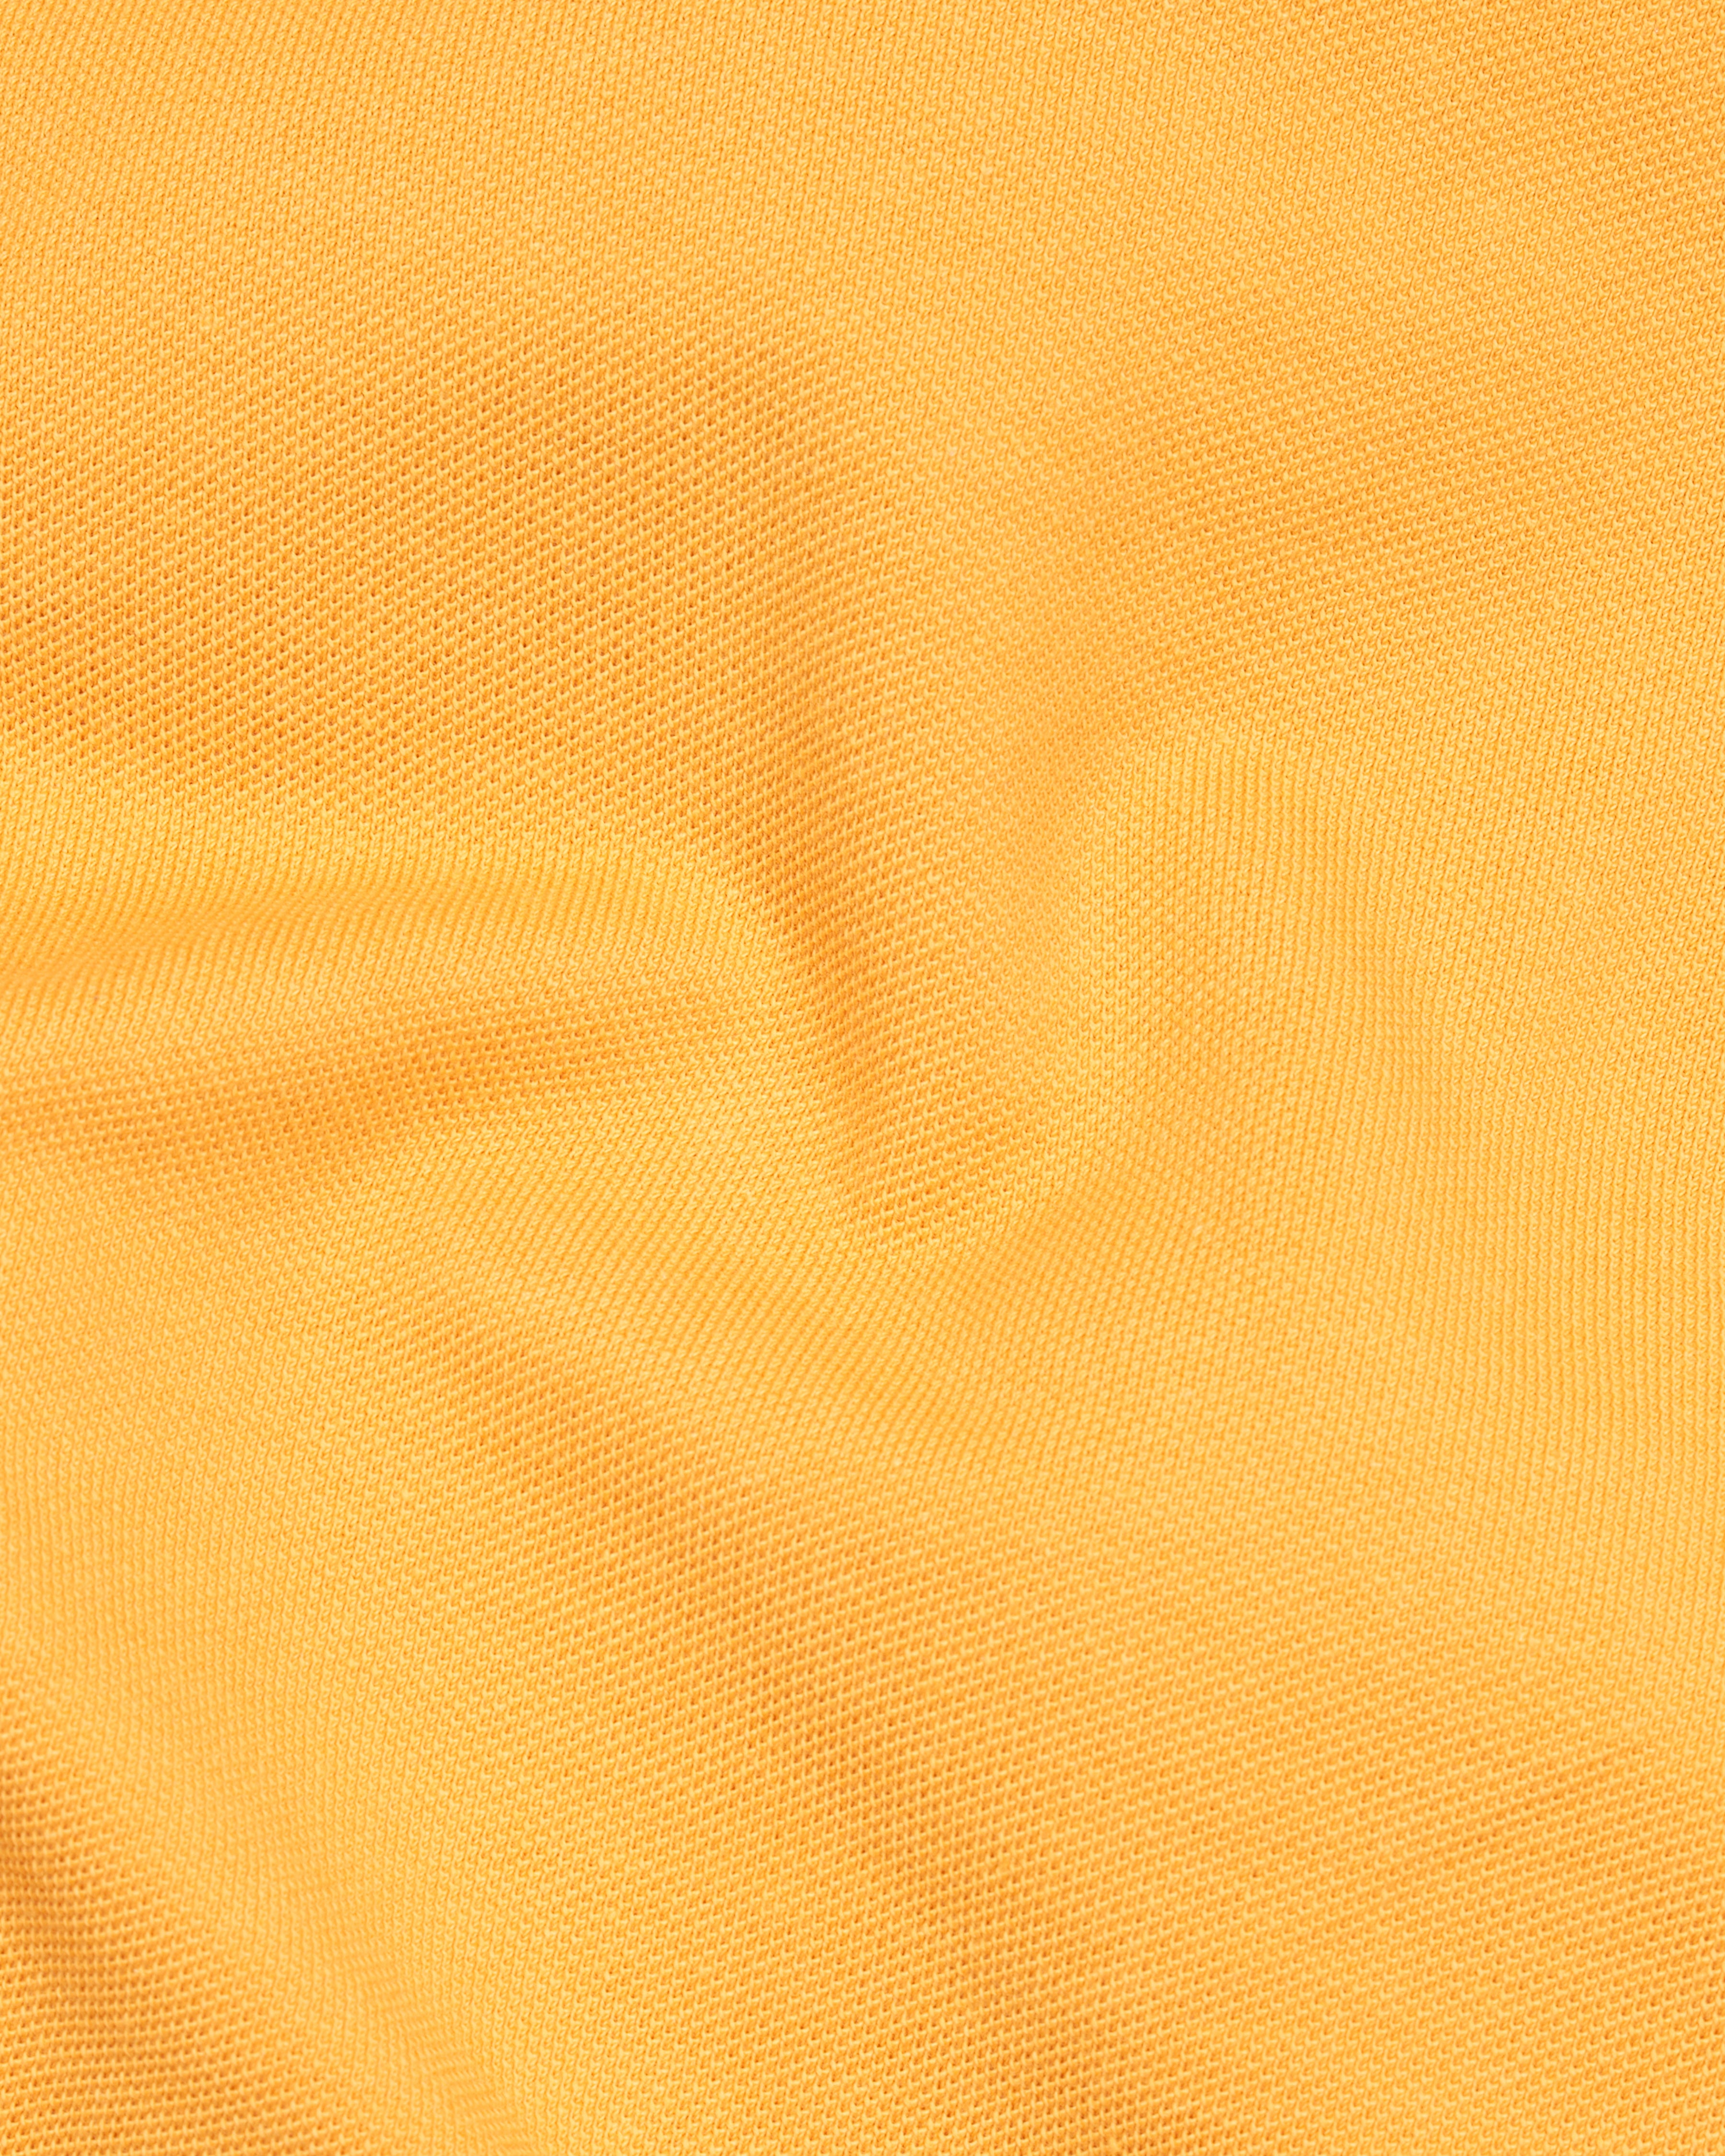 Apricot Mustard Yellow Organic Cotton Pique Polo TS771-S, TS771-M, TS771-L, TS771-XL, TS771-XXL